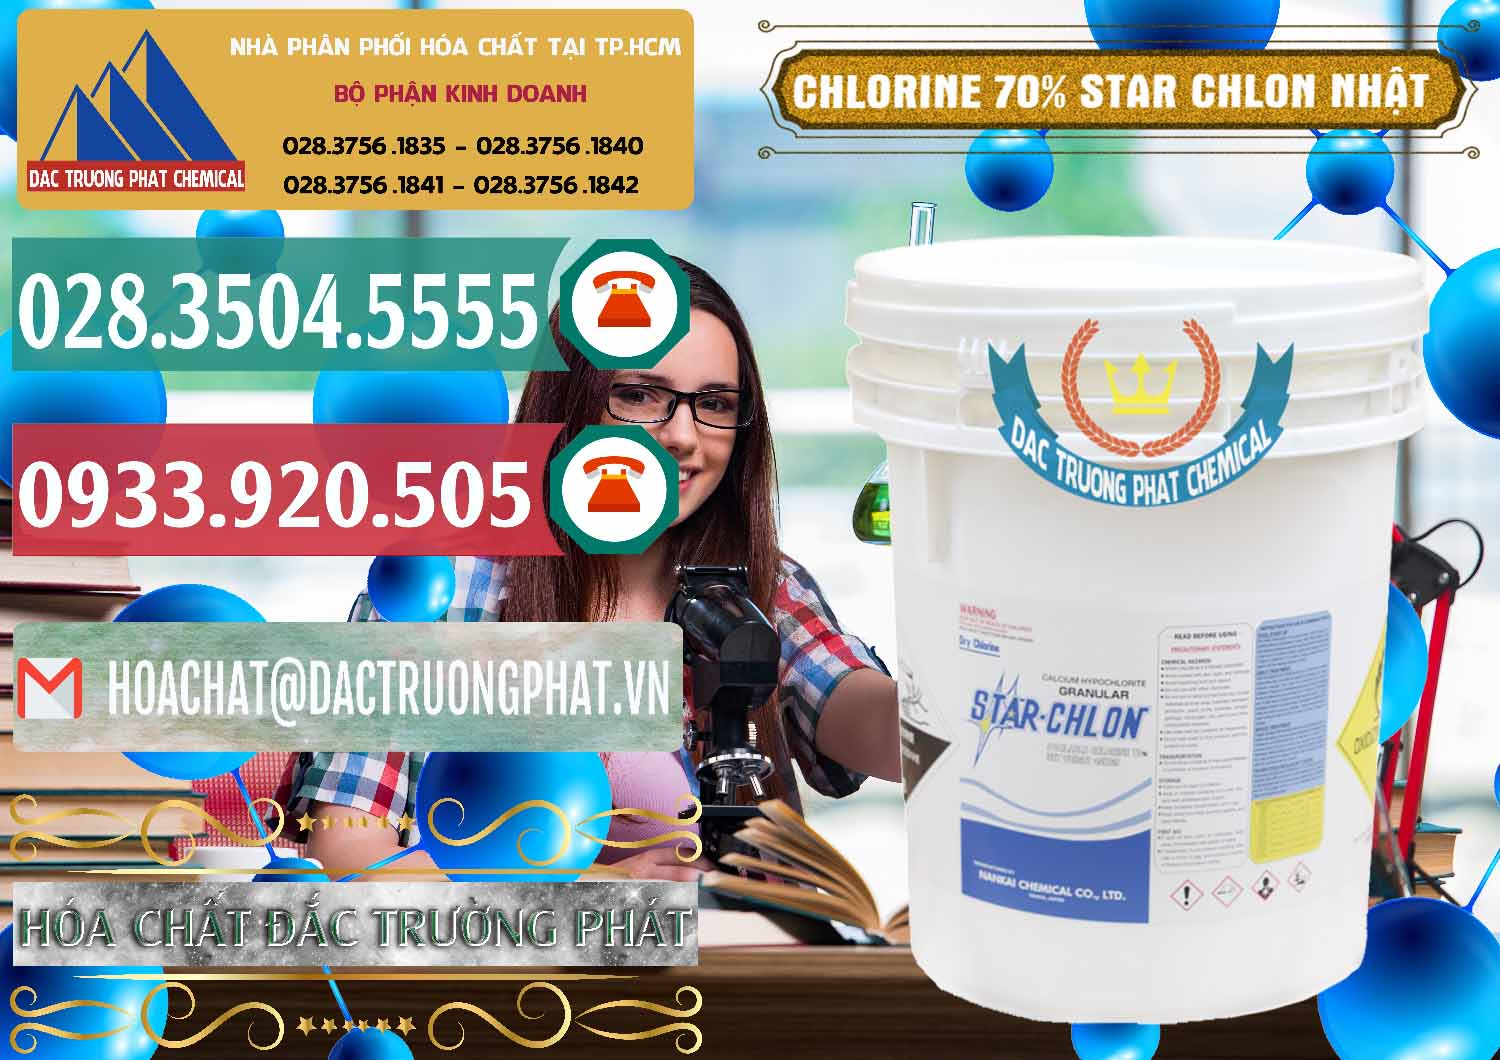 Cty bán - phân phối Clorin – Chlorine 70% Star Chlon Nhật Bản Japan - 0243 - Cty chuyên kinh doanh & cung cấp hóa chất tại TP.HCM - muabanhoachat.vn